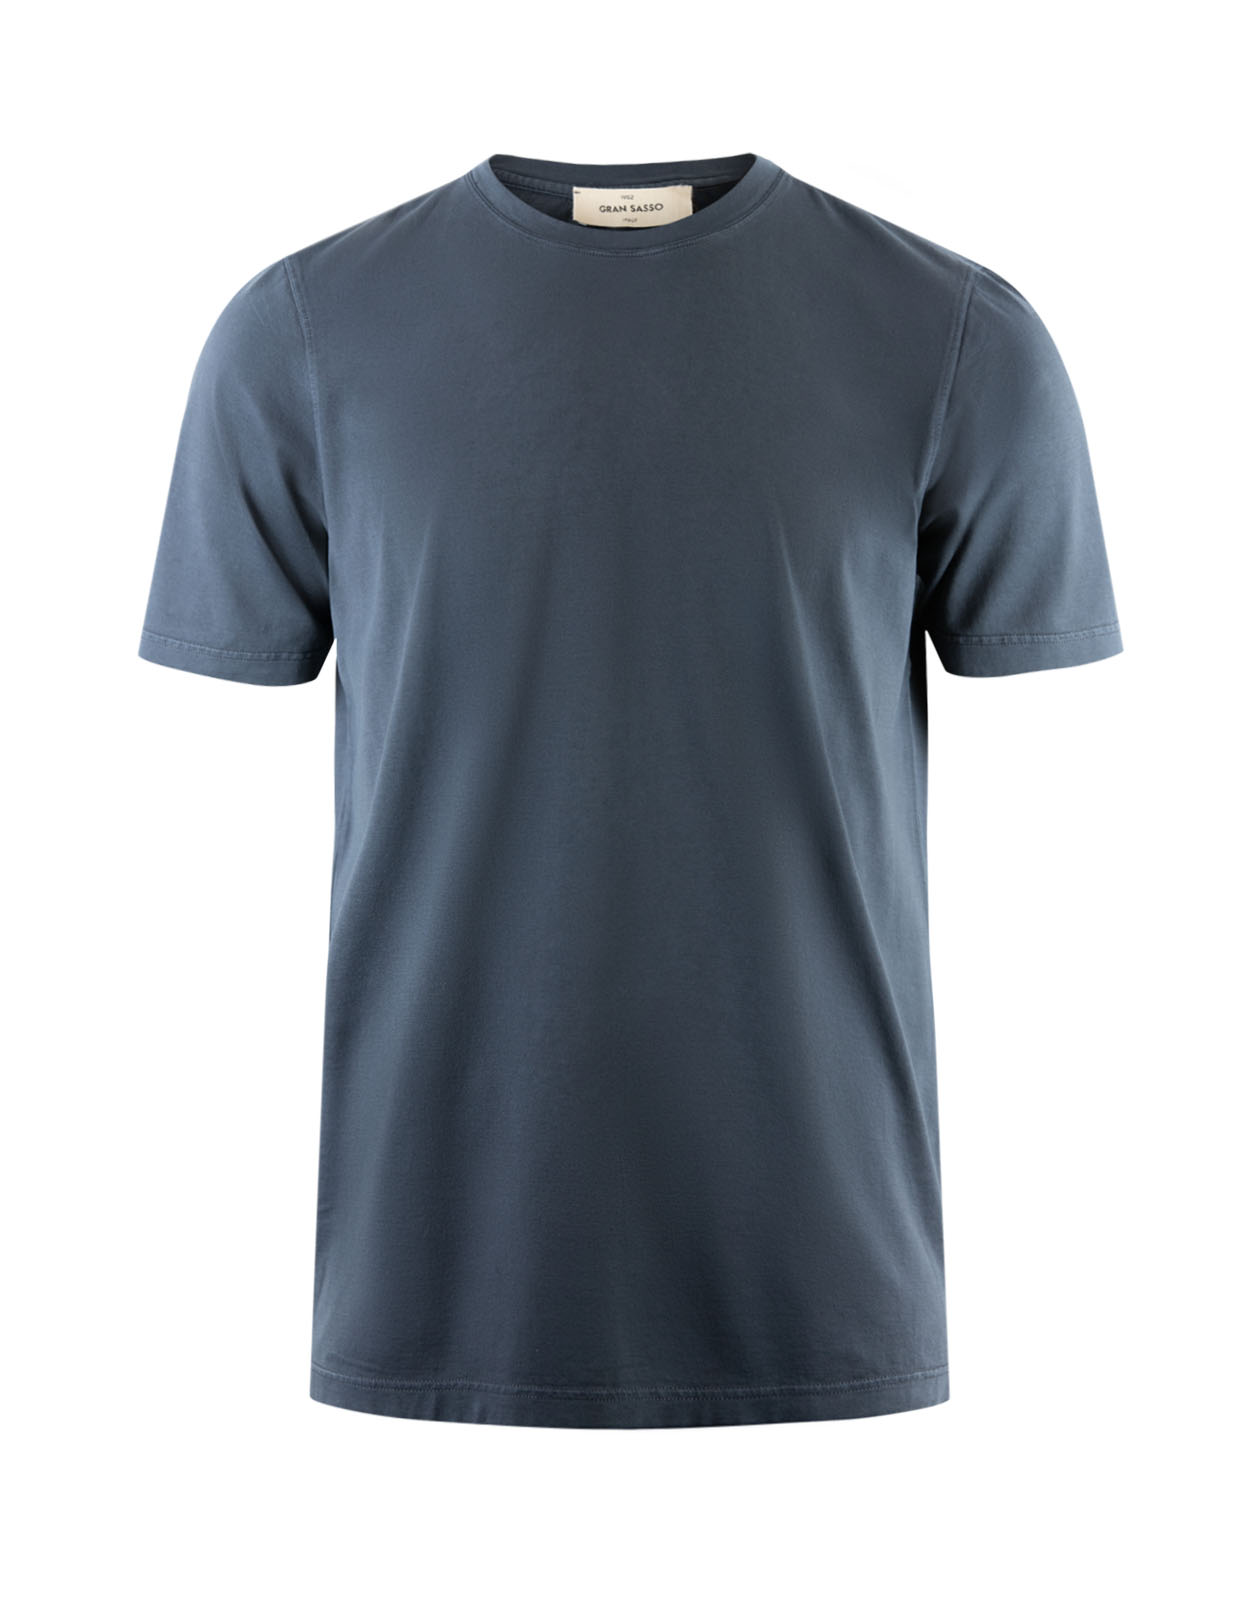 T-Shirt Bomull Navy Stl 54